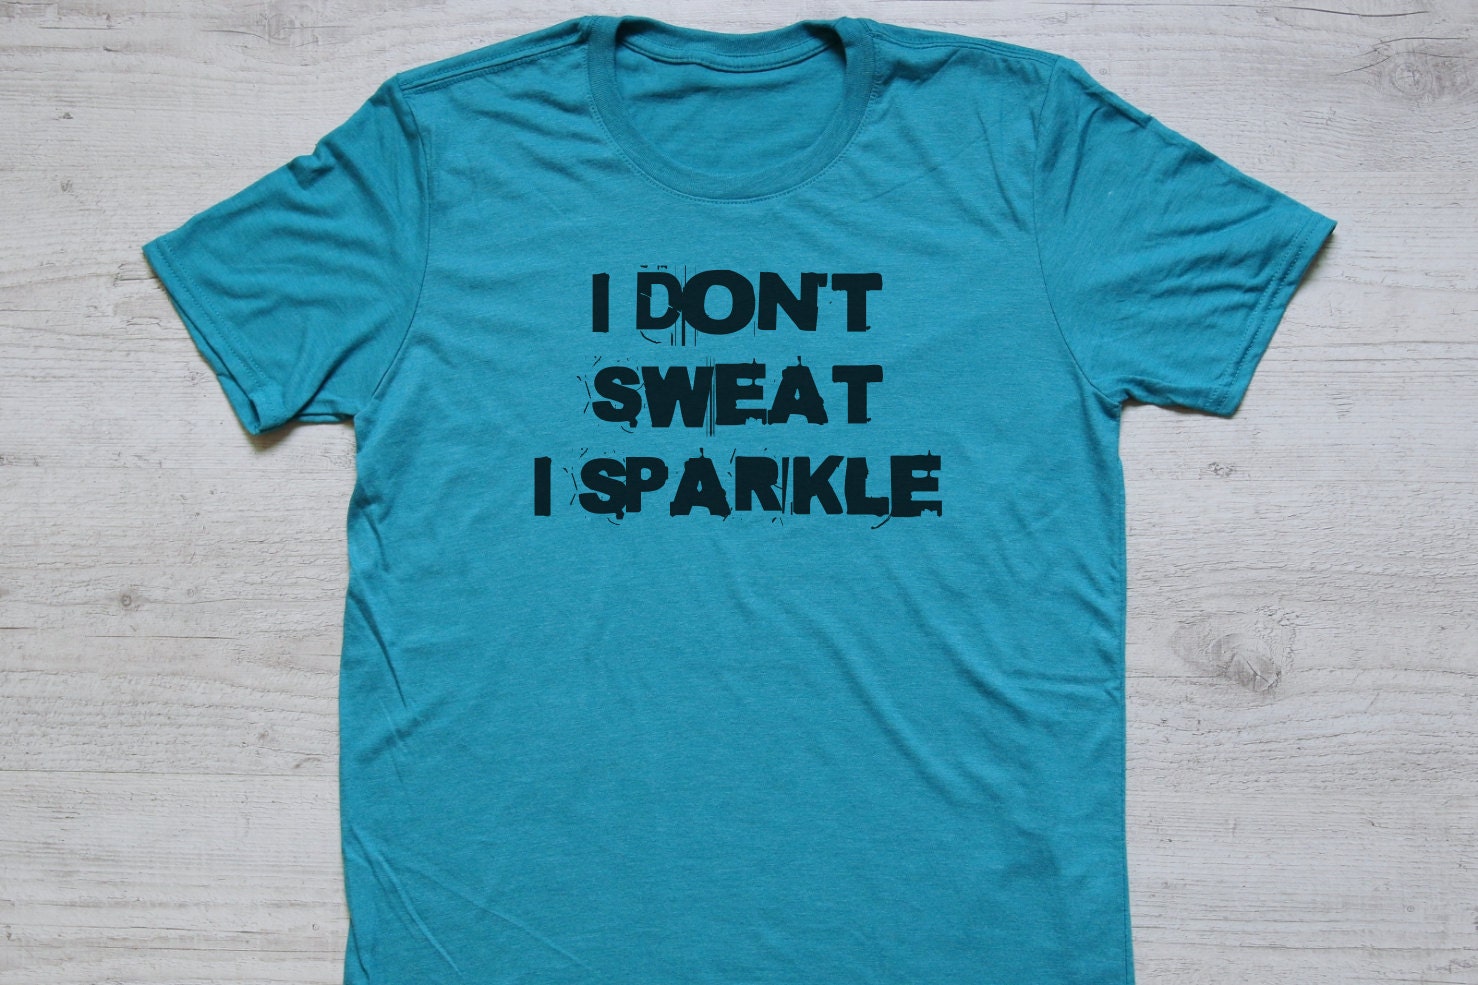 I don't sweat I sparkle tee t-shirt shirt adult unisex